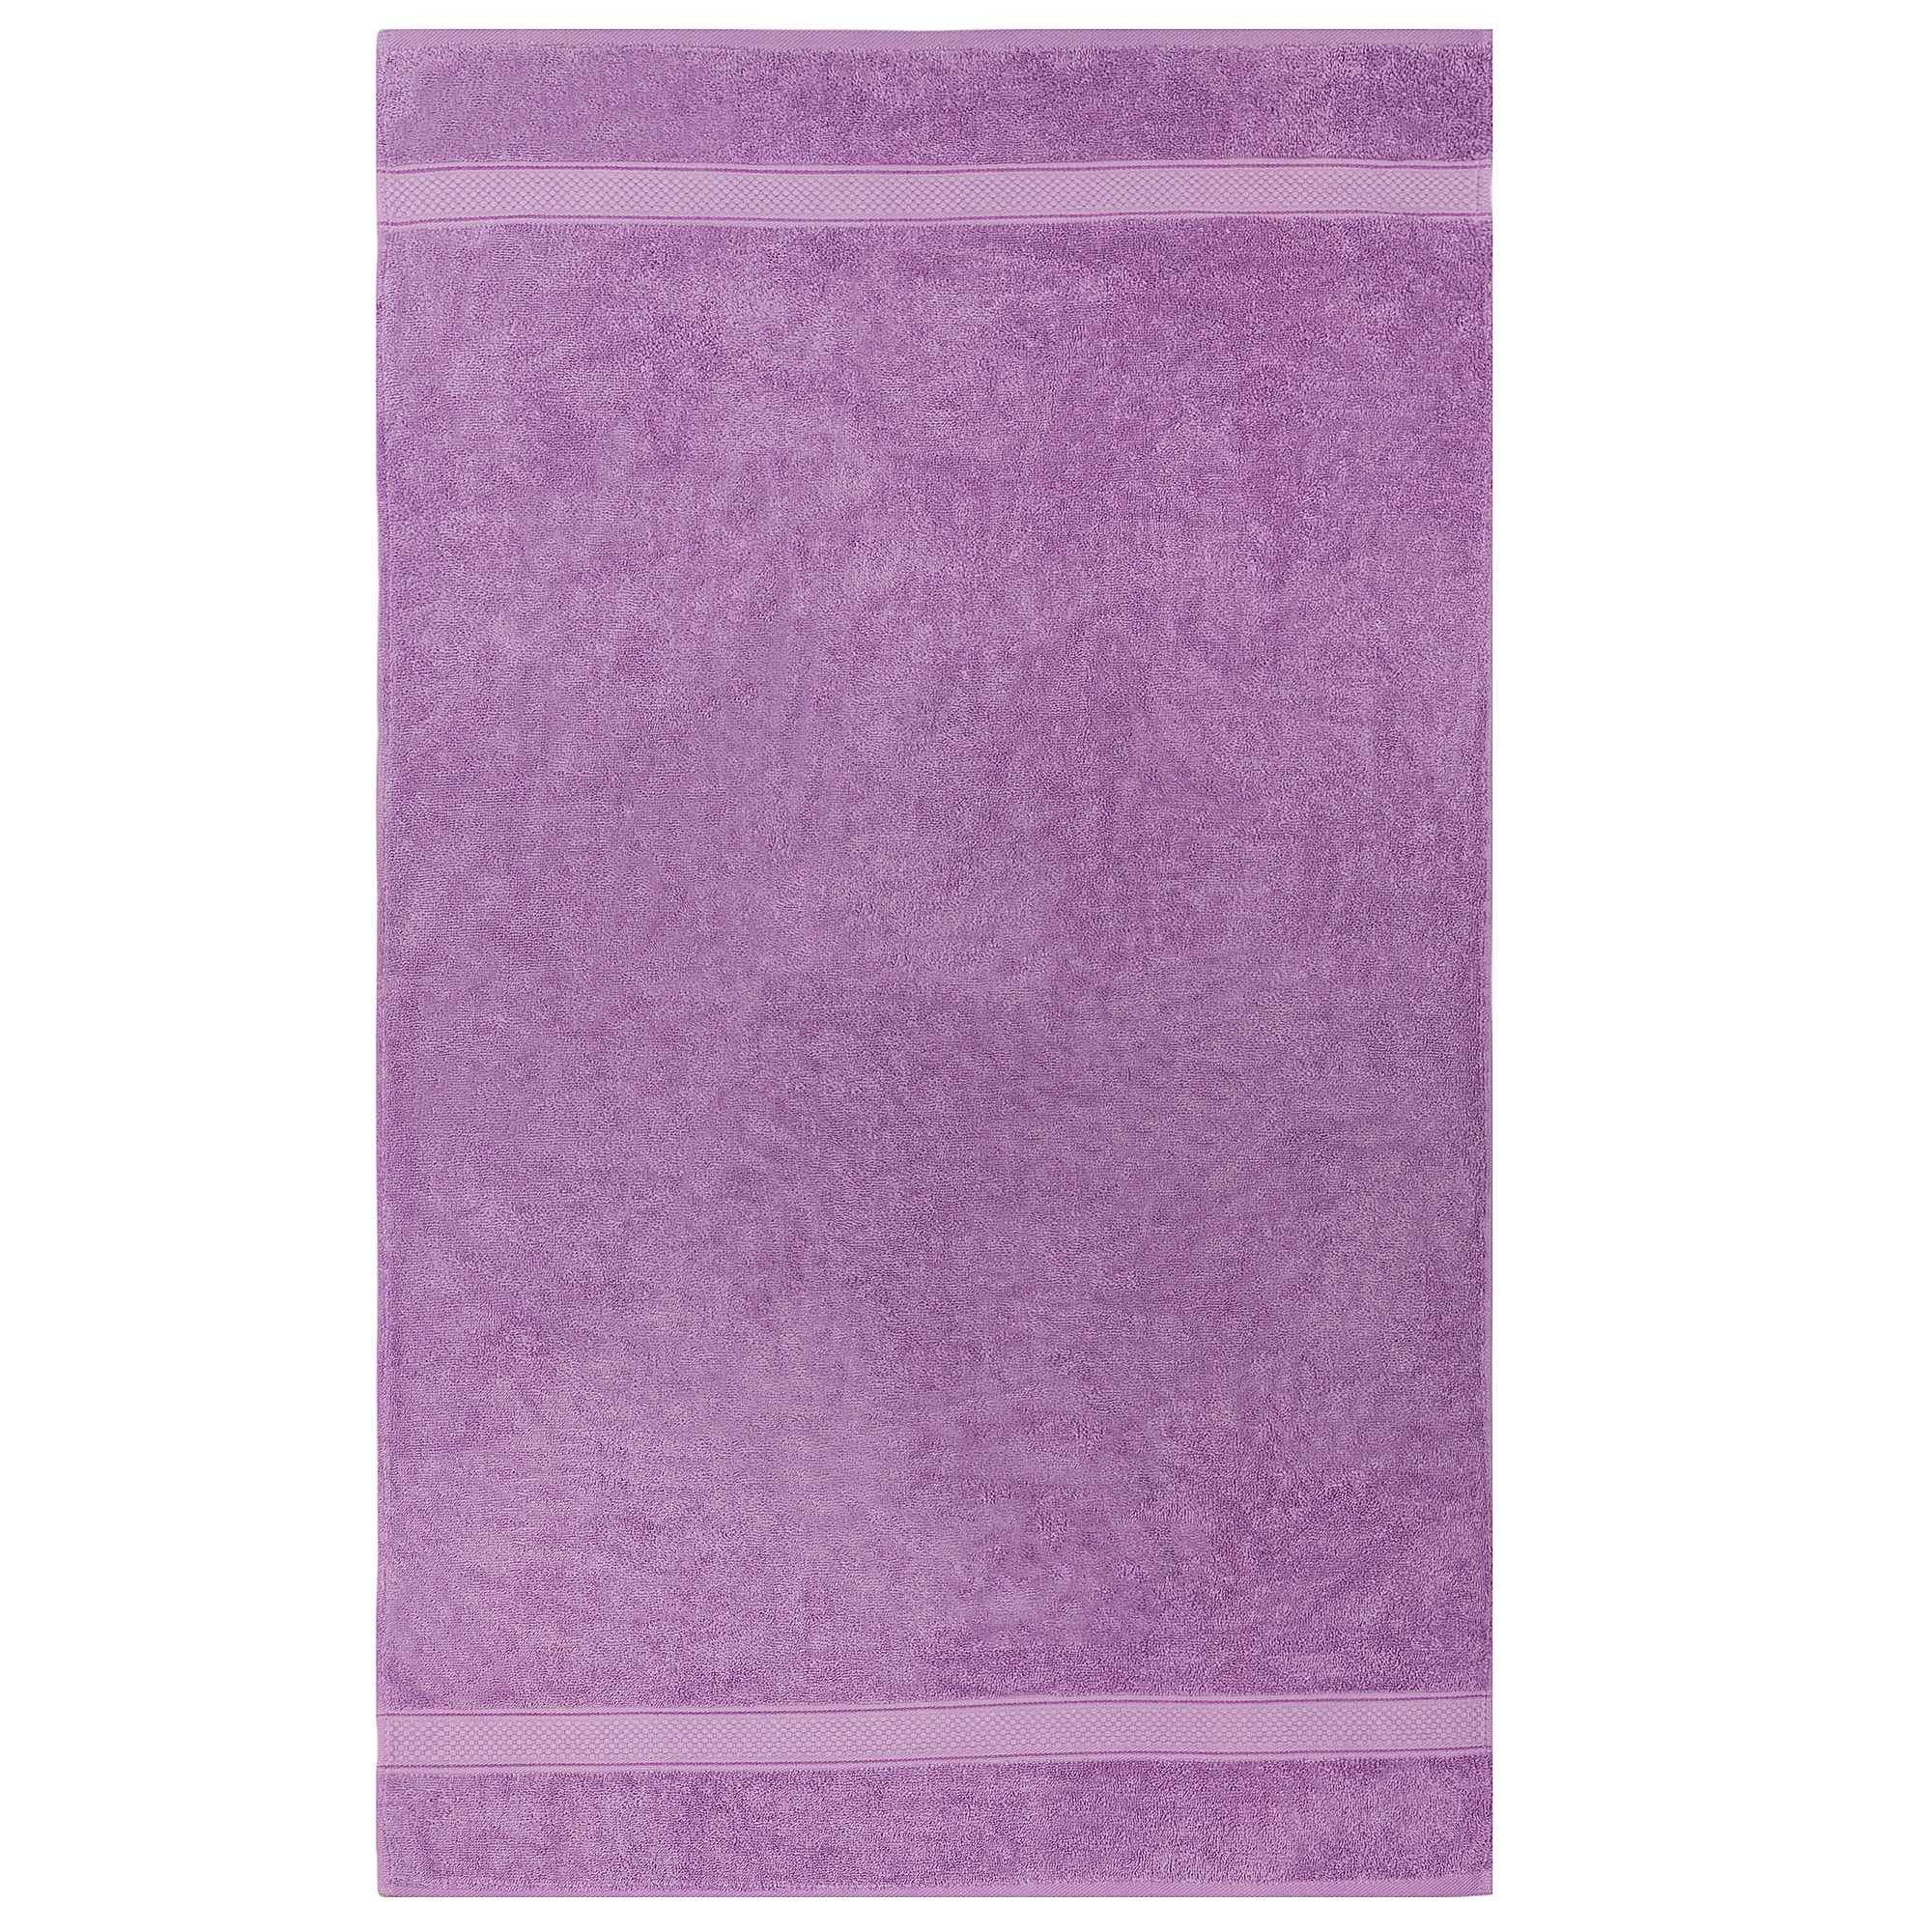 Bale Set 4pcs Lilac Plain Hand Towel